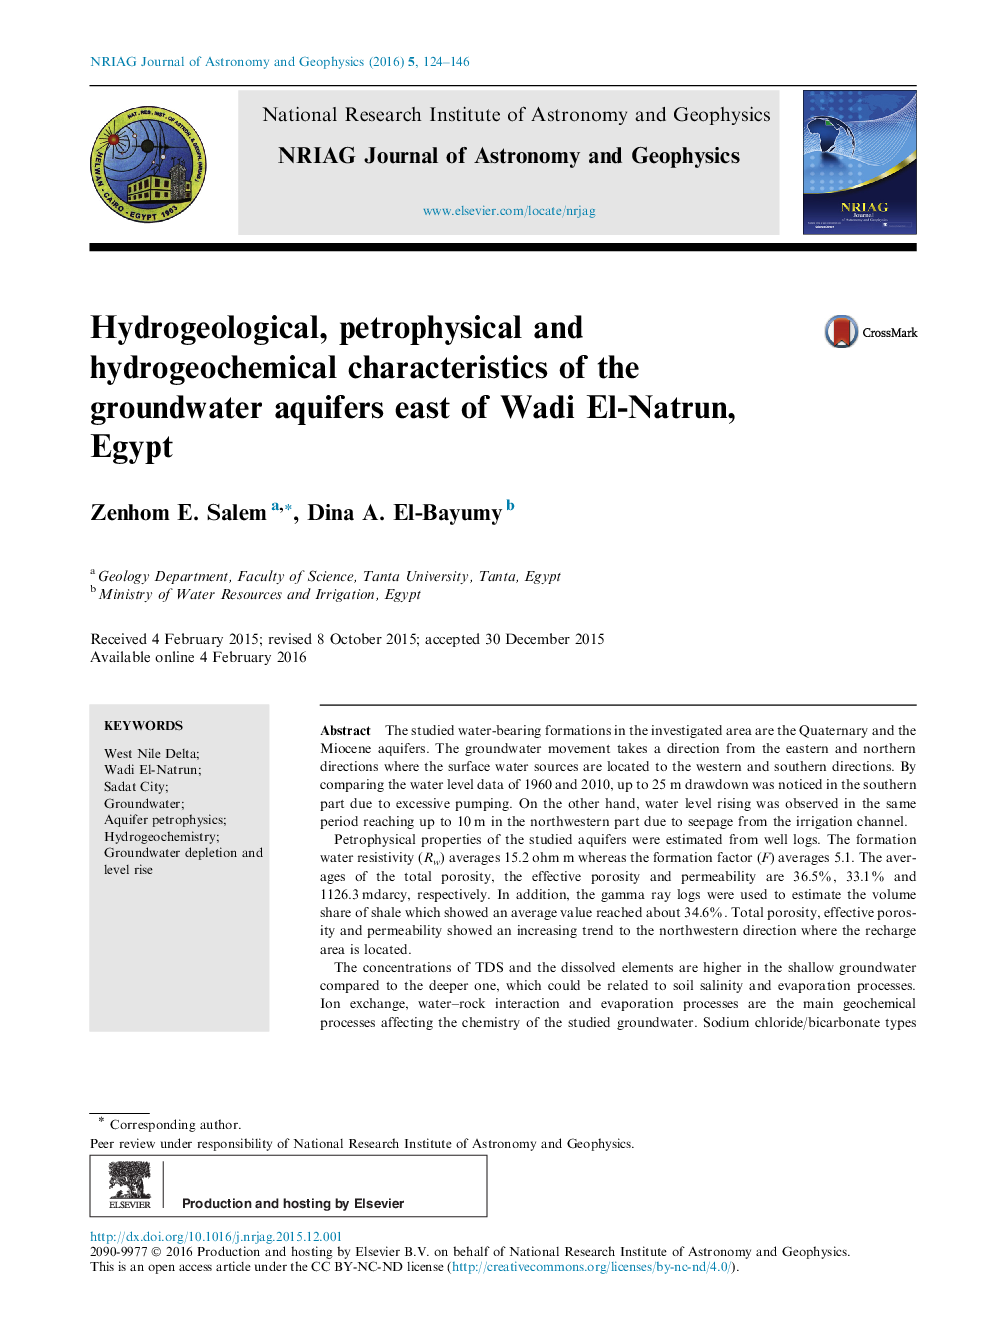 مشخصات هیدروژئولوژیکی، پتروفیزیک و هیدروژئوشیمیایی آبخوانهای زیرزمینی شرق وادی النطن، مصر 